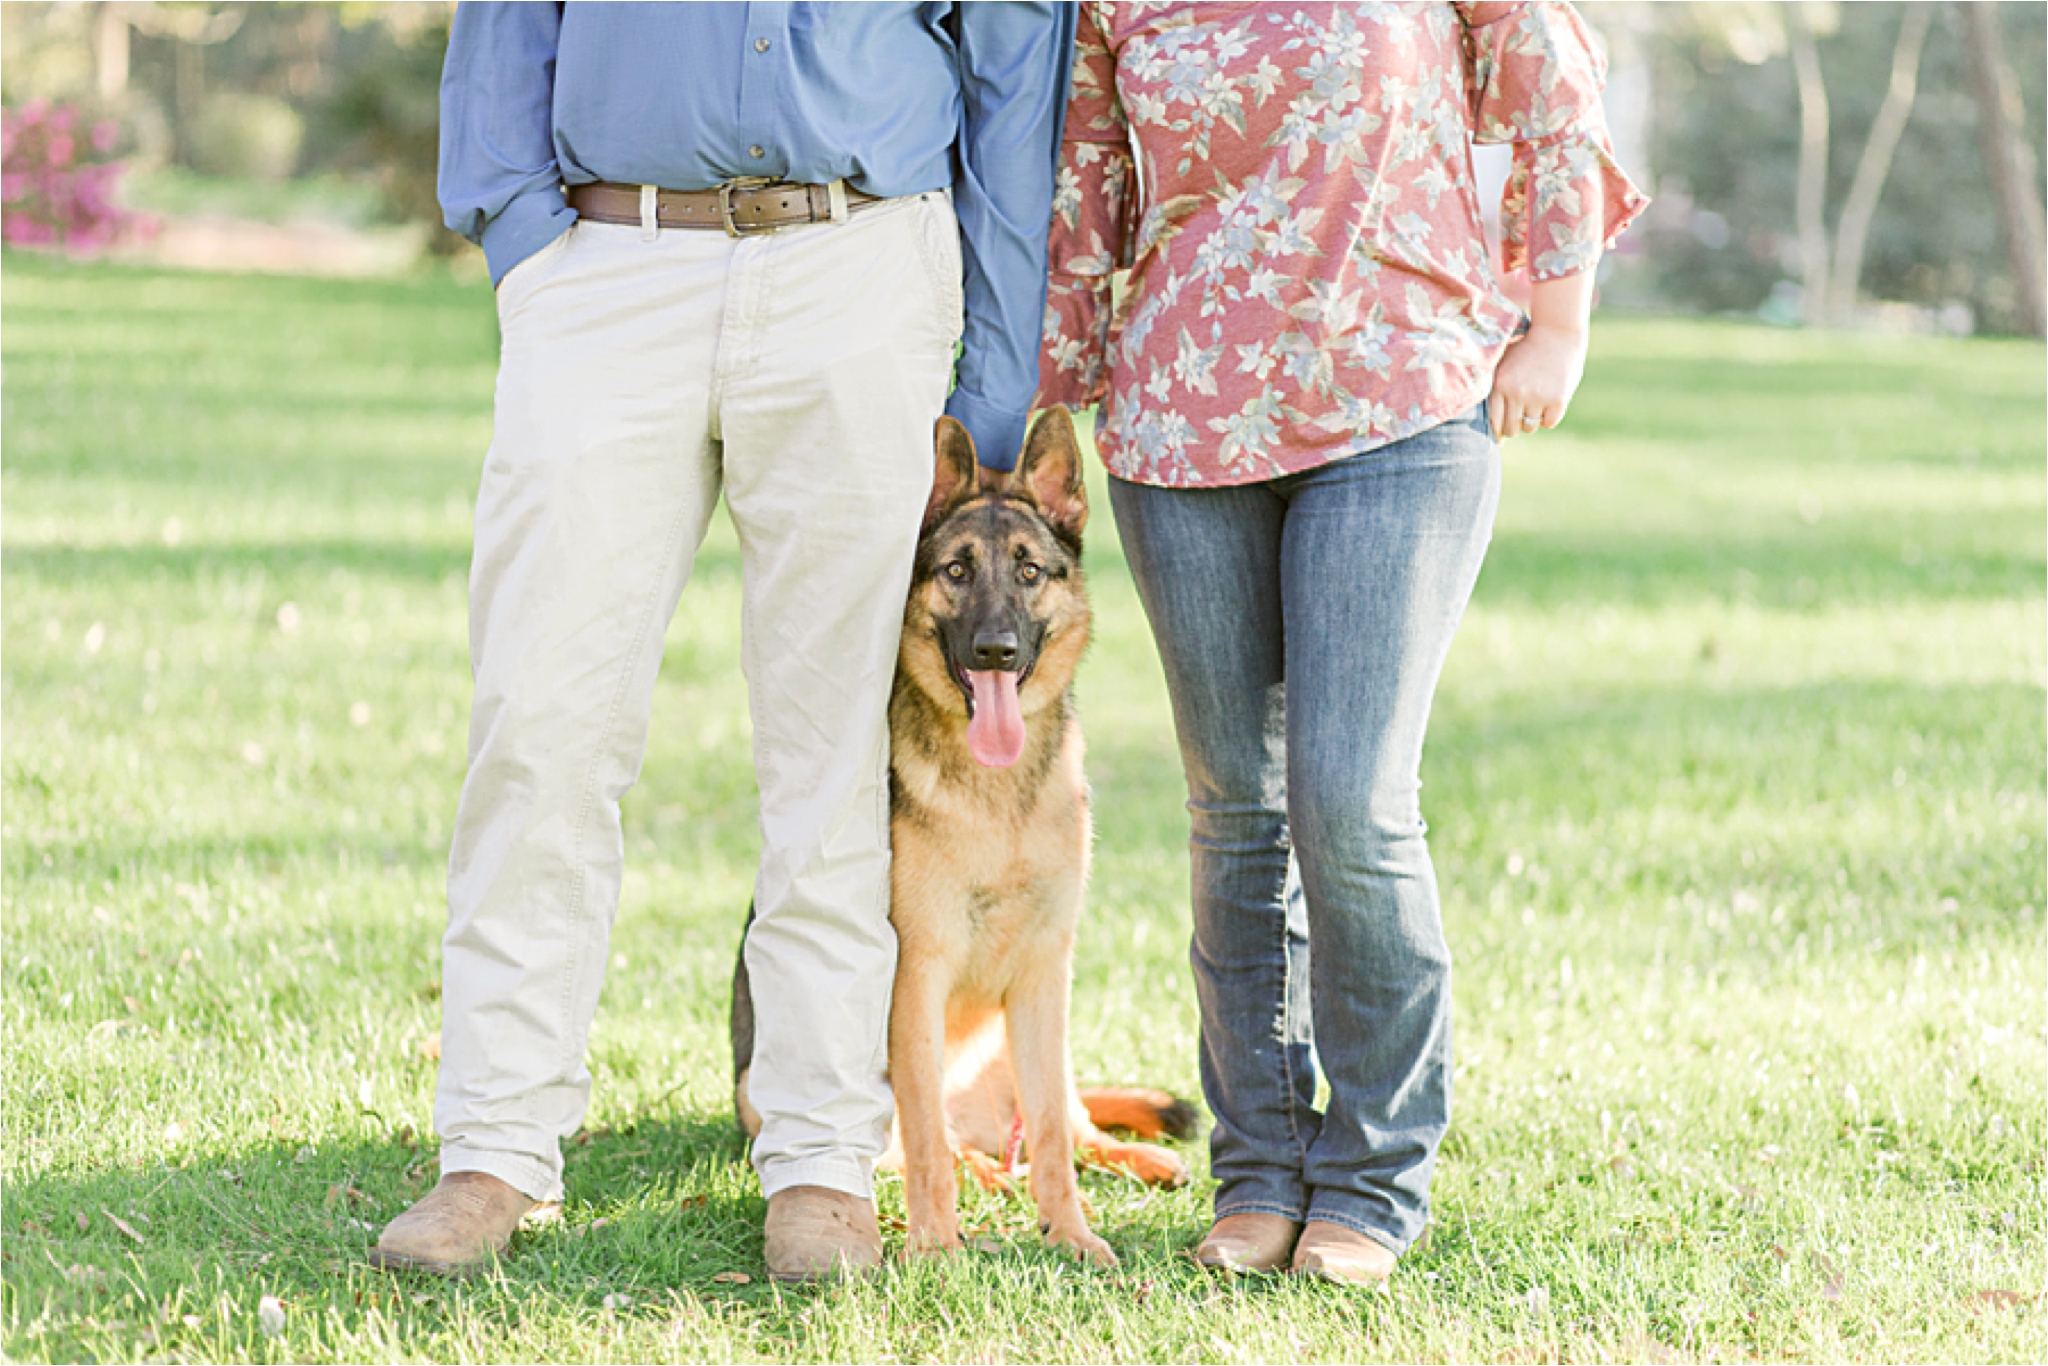 alabama-wedding-photographer-engagement-photos-session-dog-family-german-shepherd